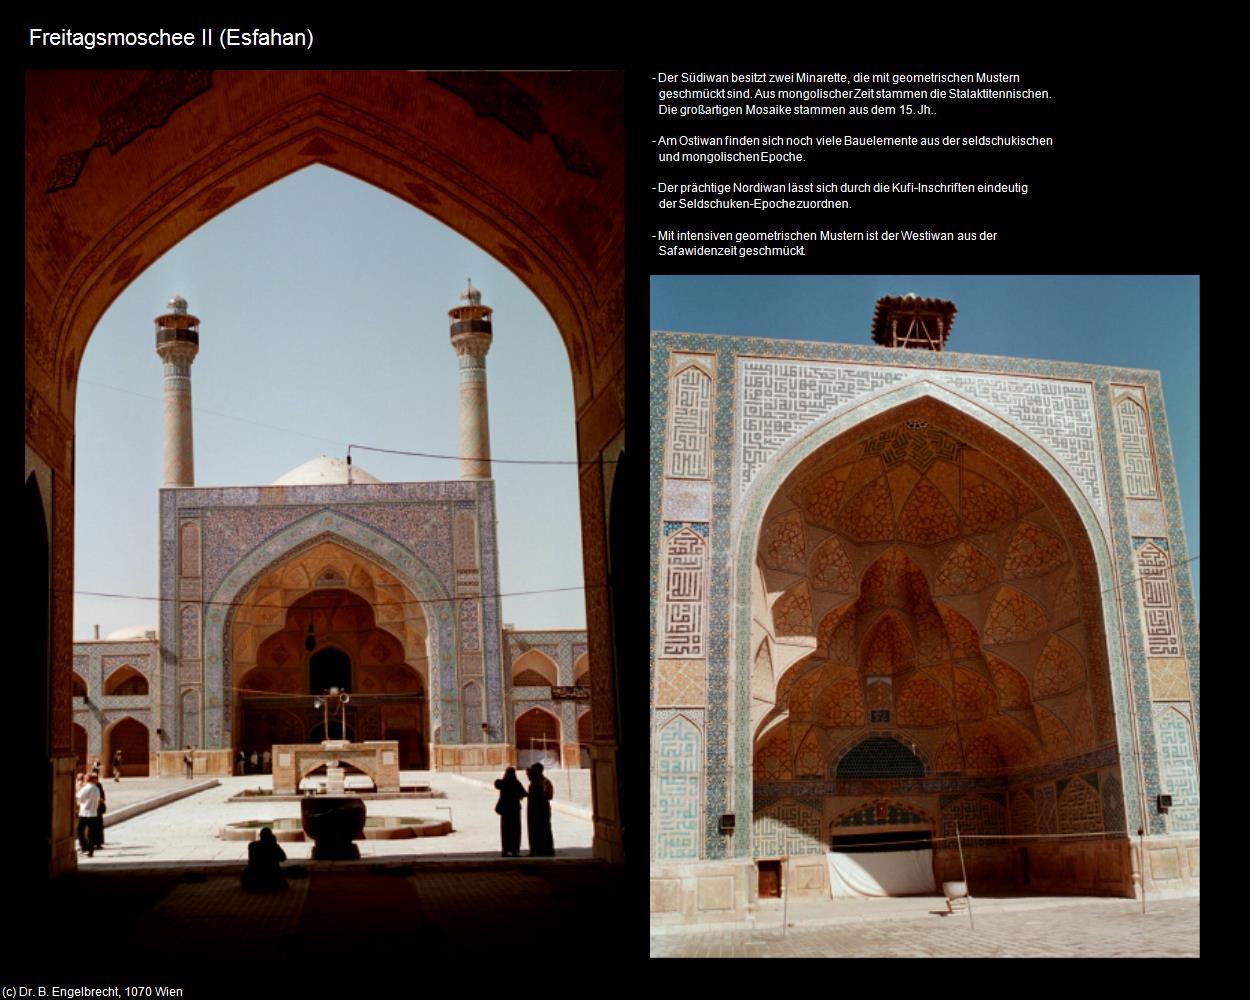 Freitagsmoschee II (Esfahan) in Iran